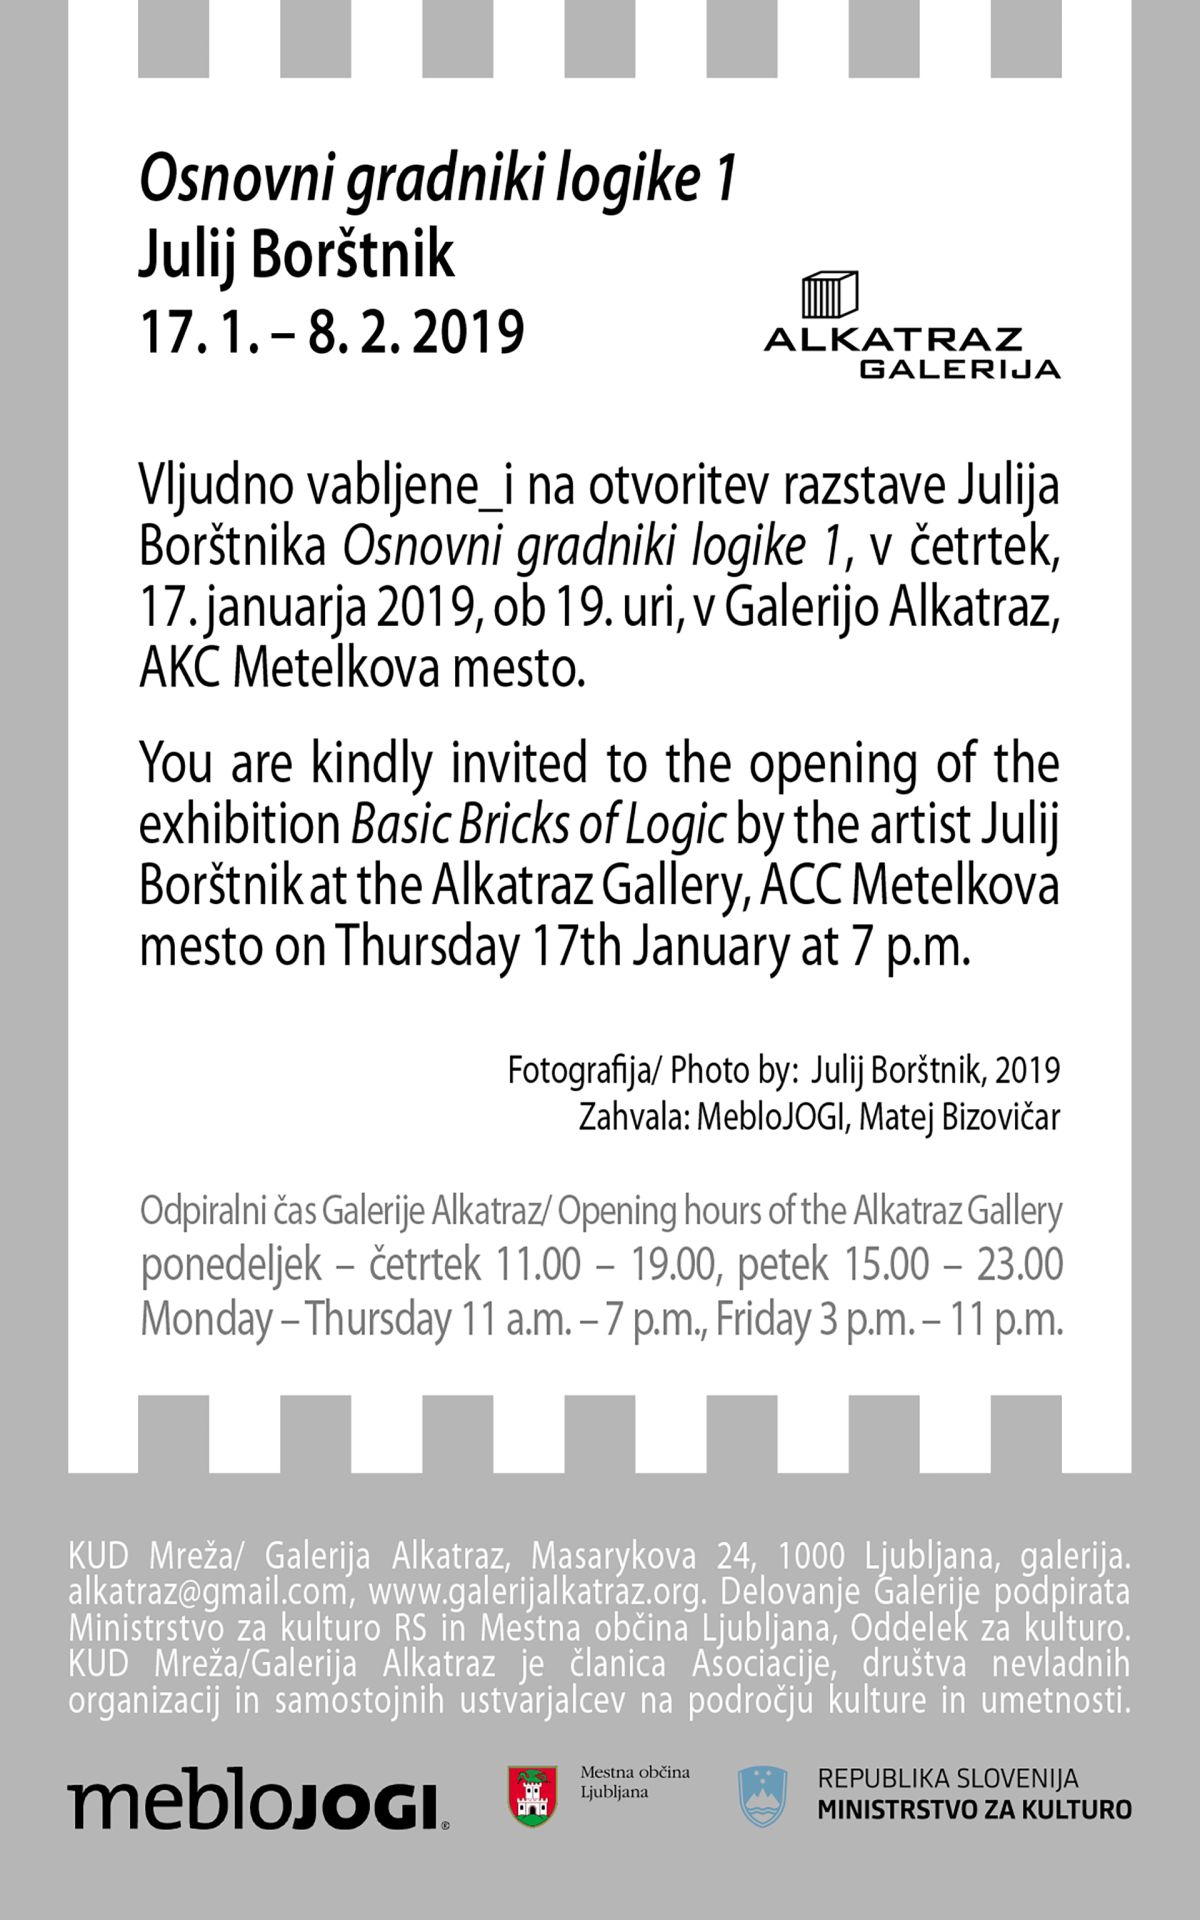 OSNOVNI GRADNIKI LOGIKE 1, Galerija Alkatraz, Ljubljana, januar 2019.